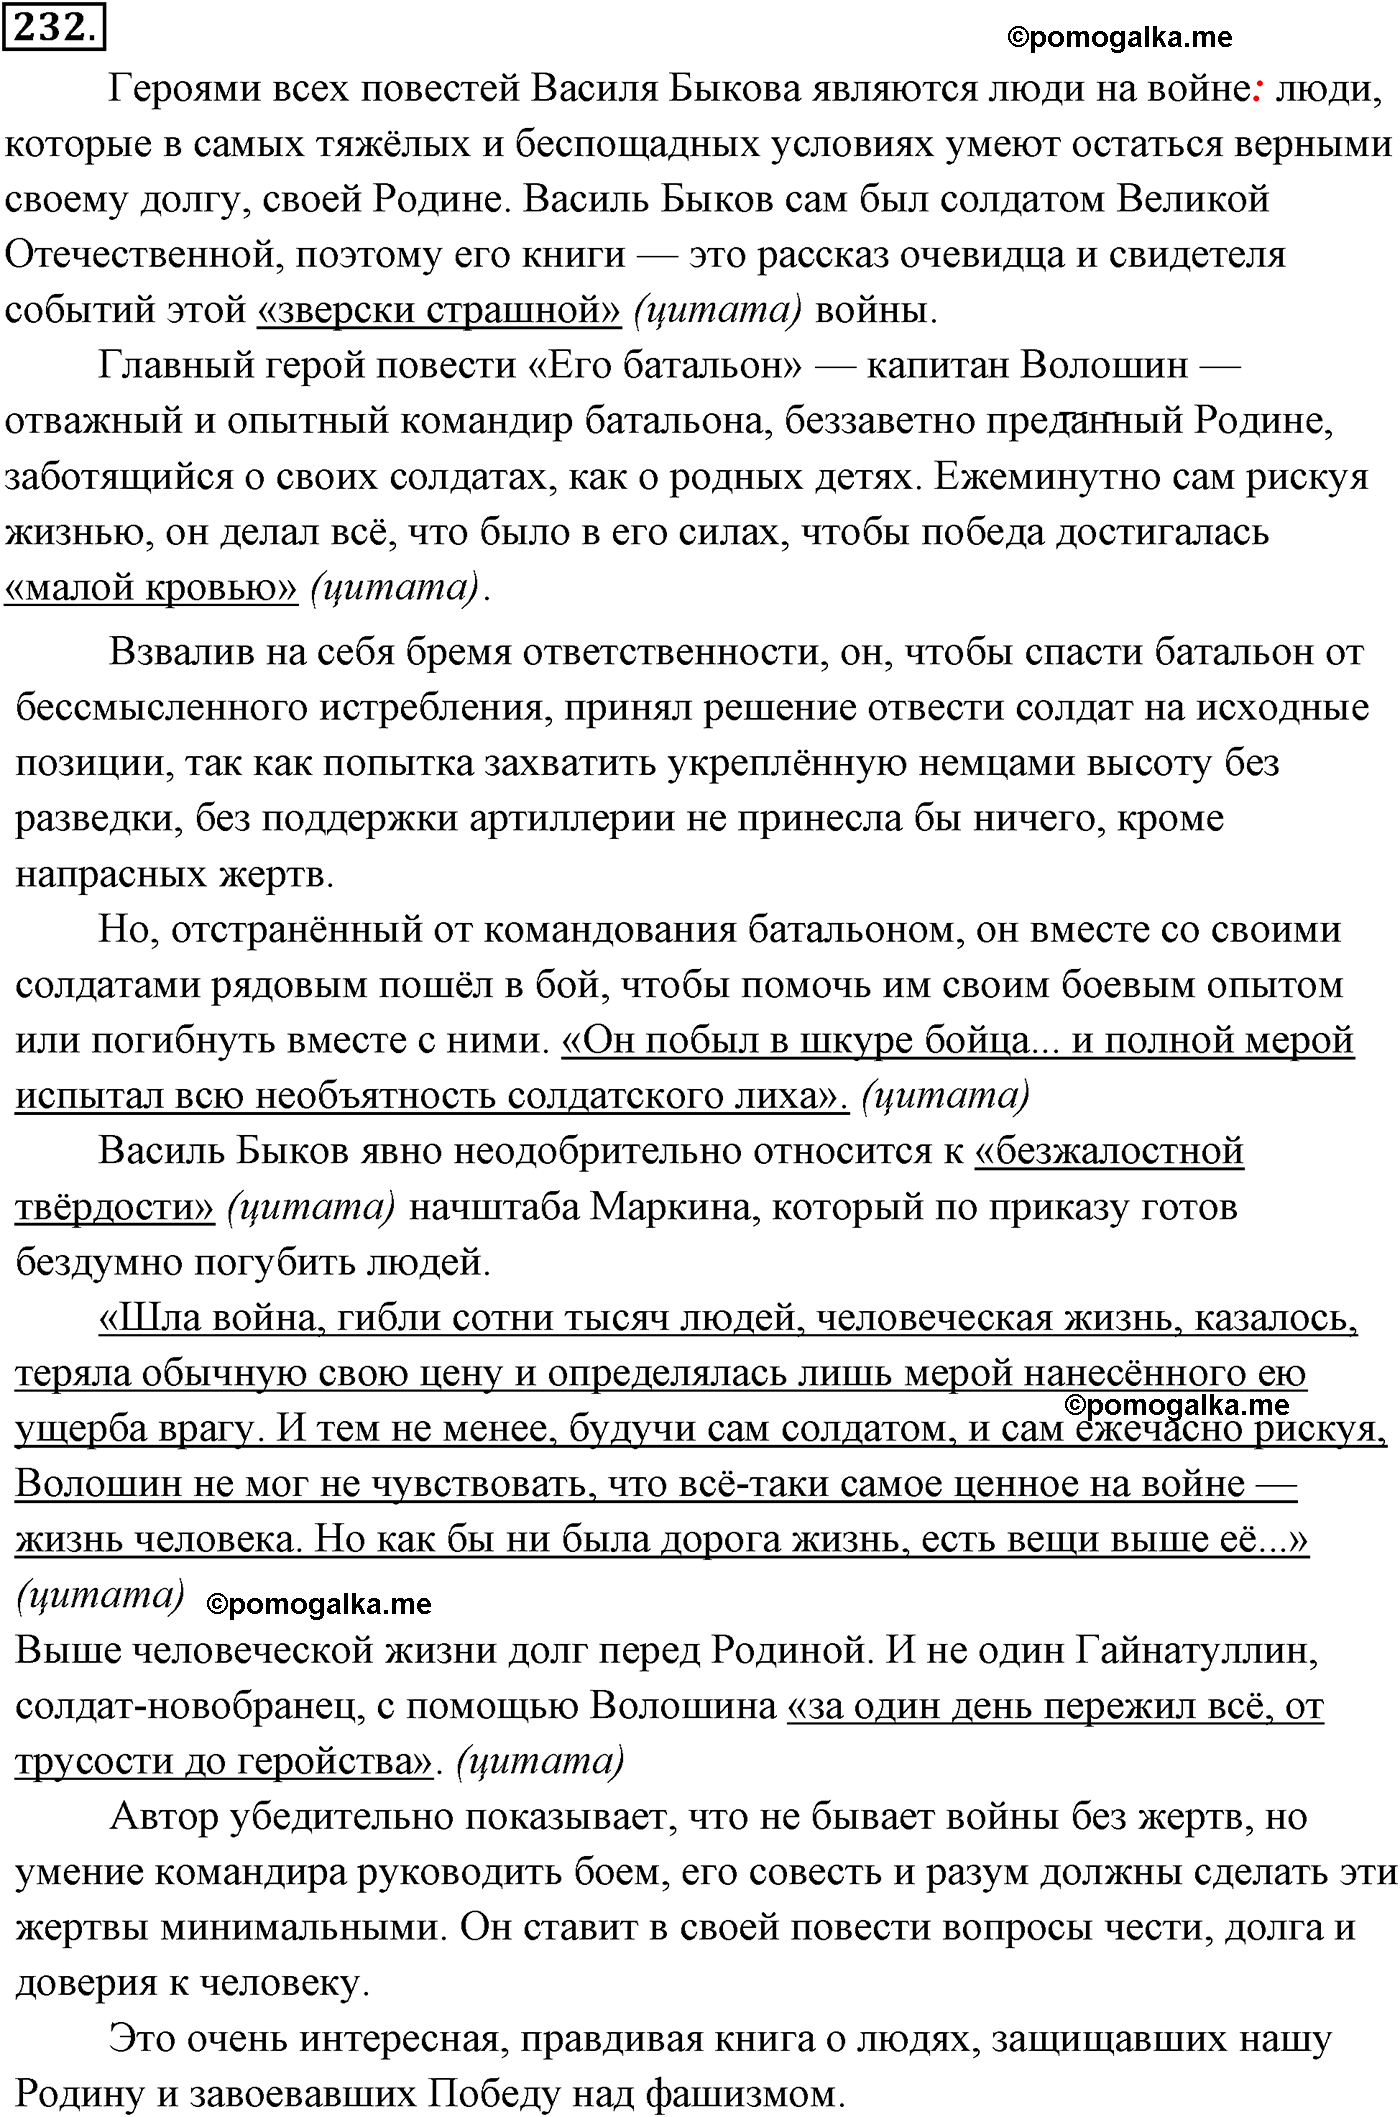 страница 162 номер 232 русский язык 9 класс Разумовская 2011 год